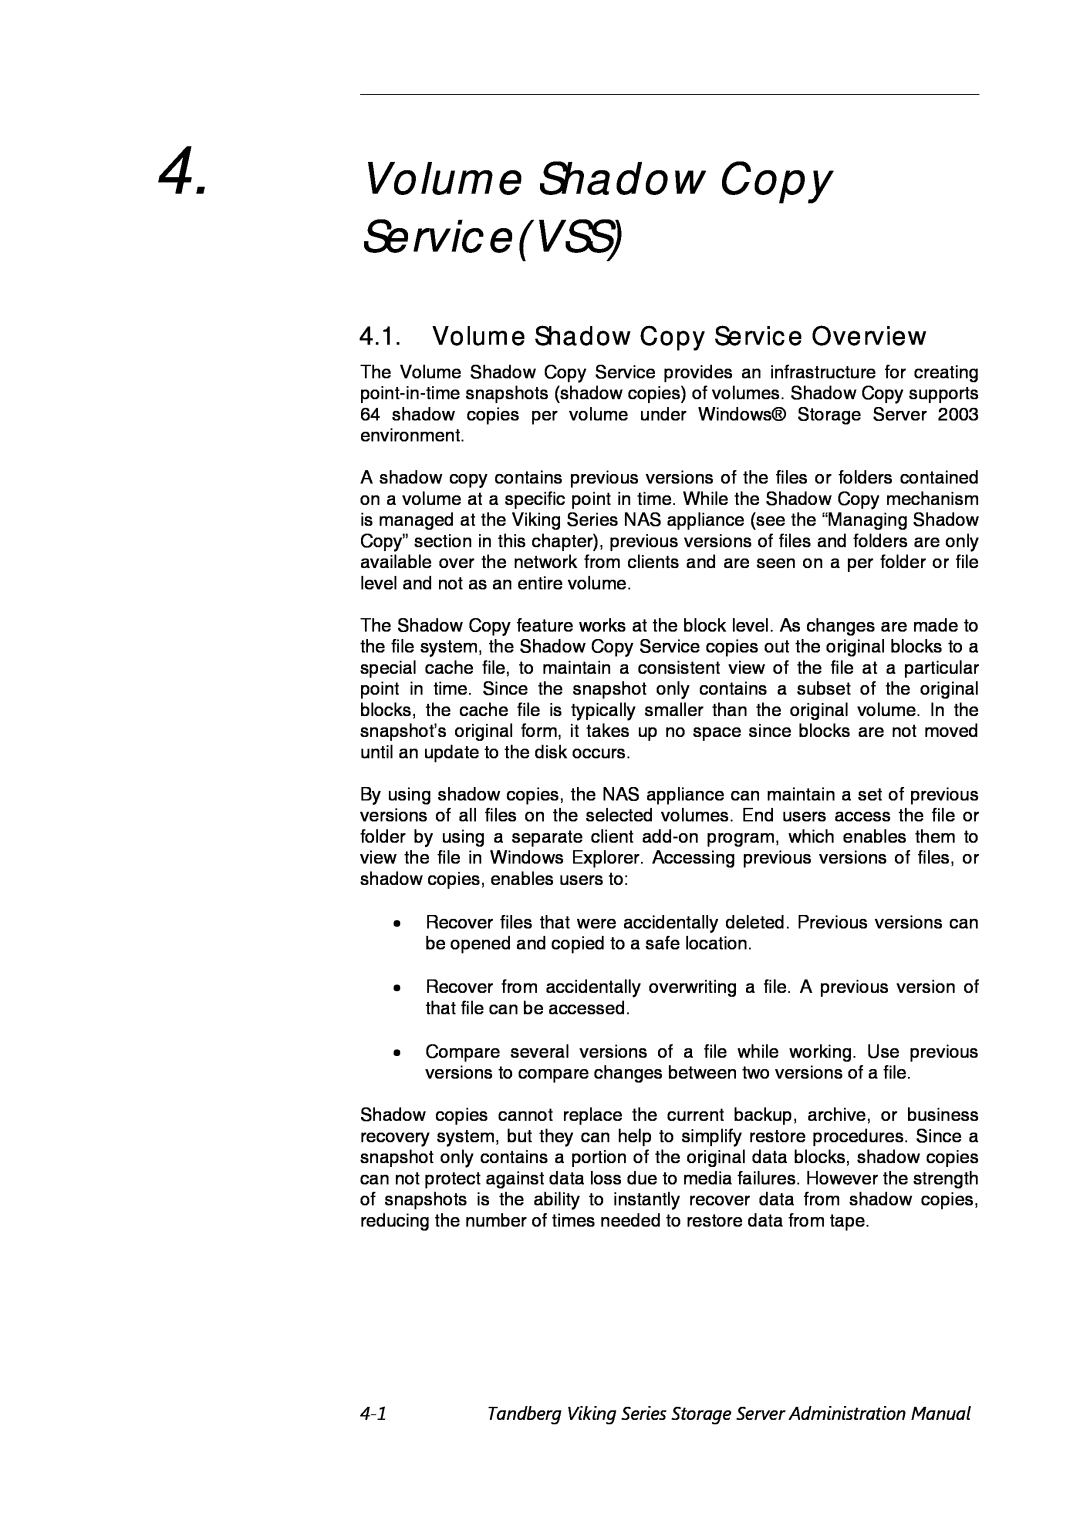 Tandberg Data Viking FS-1600, Viking FS-1500 manual Volume Shadow Copy ServiceVSS, Volume Shadow Copy Service Overview 